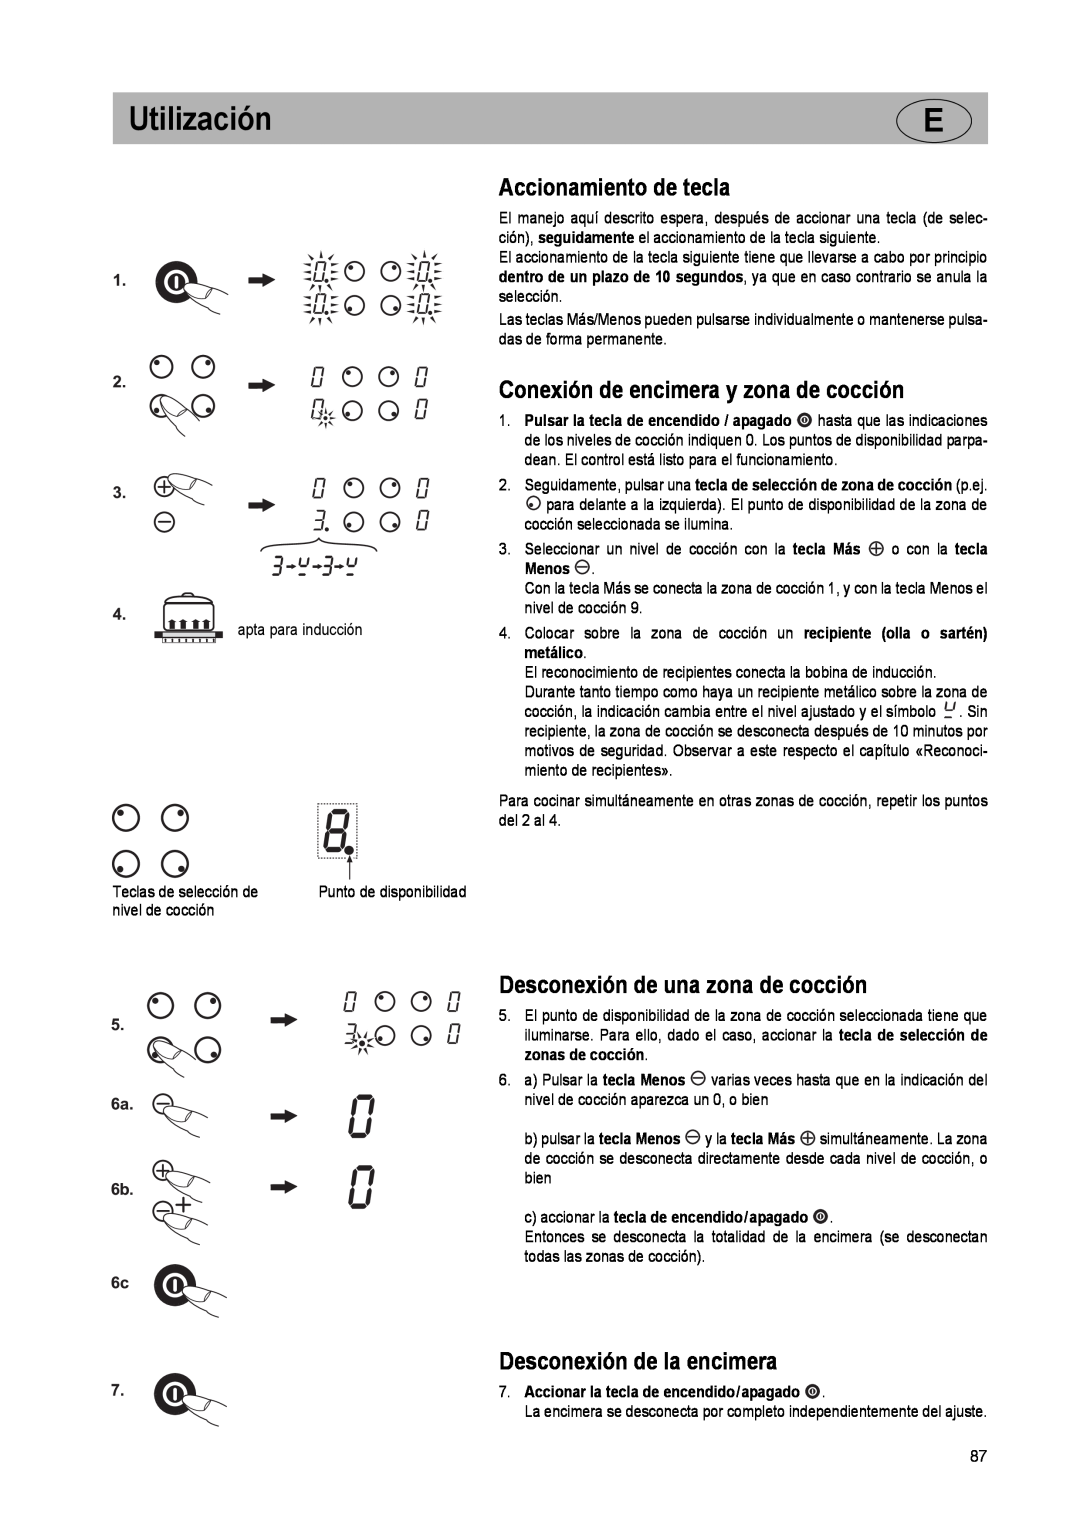 Smeg SE2931ID manual Accionamiento de tecla, Conexión de encimera y zona de cocción, Desconexión de una zona de cocción 